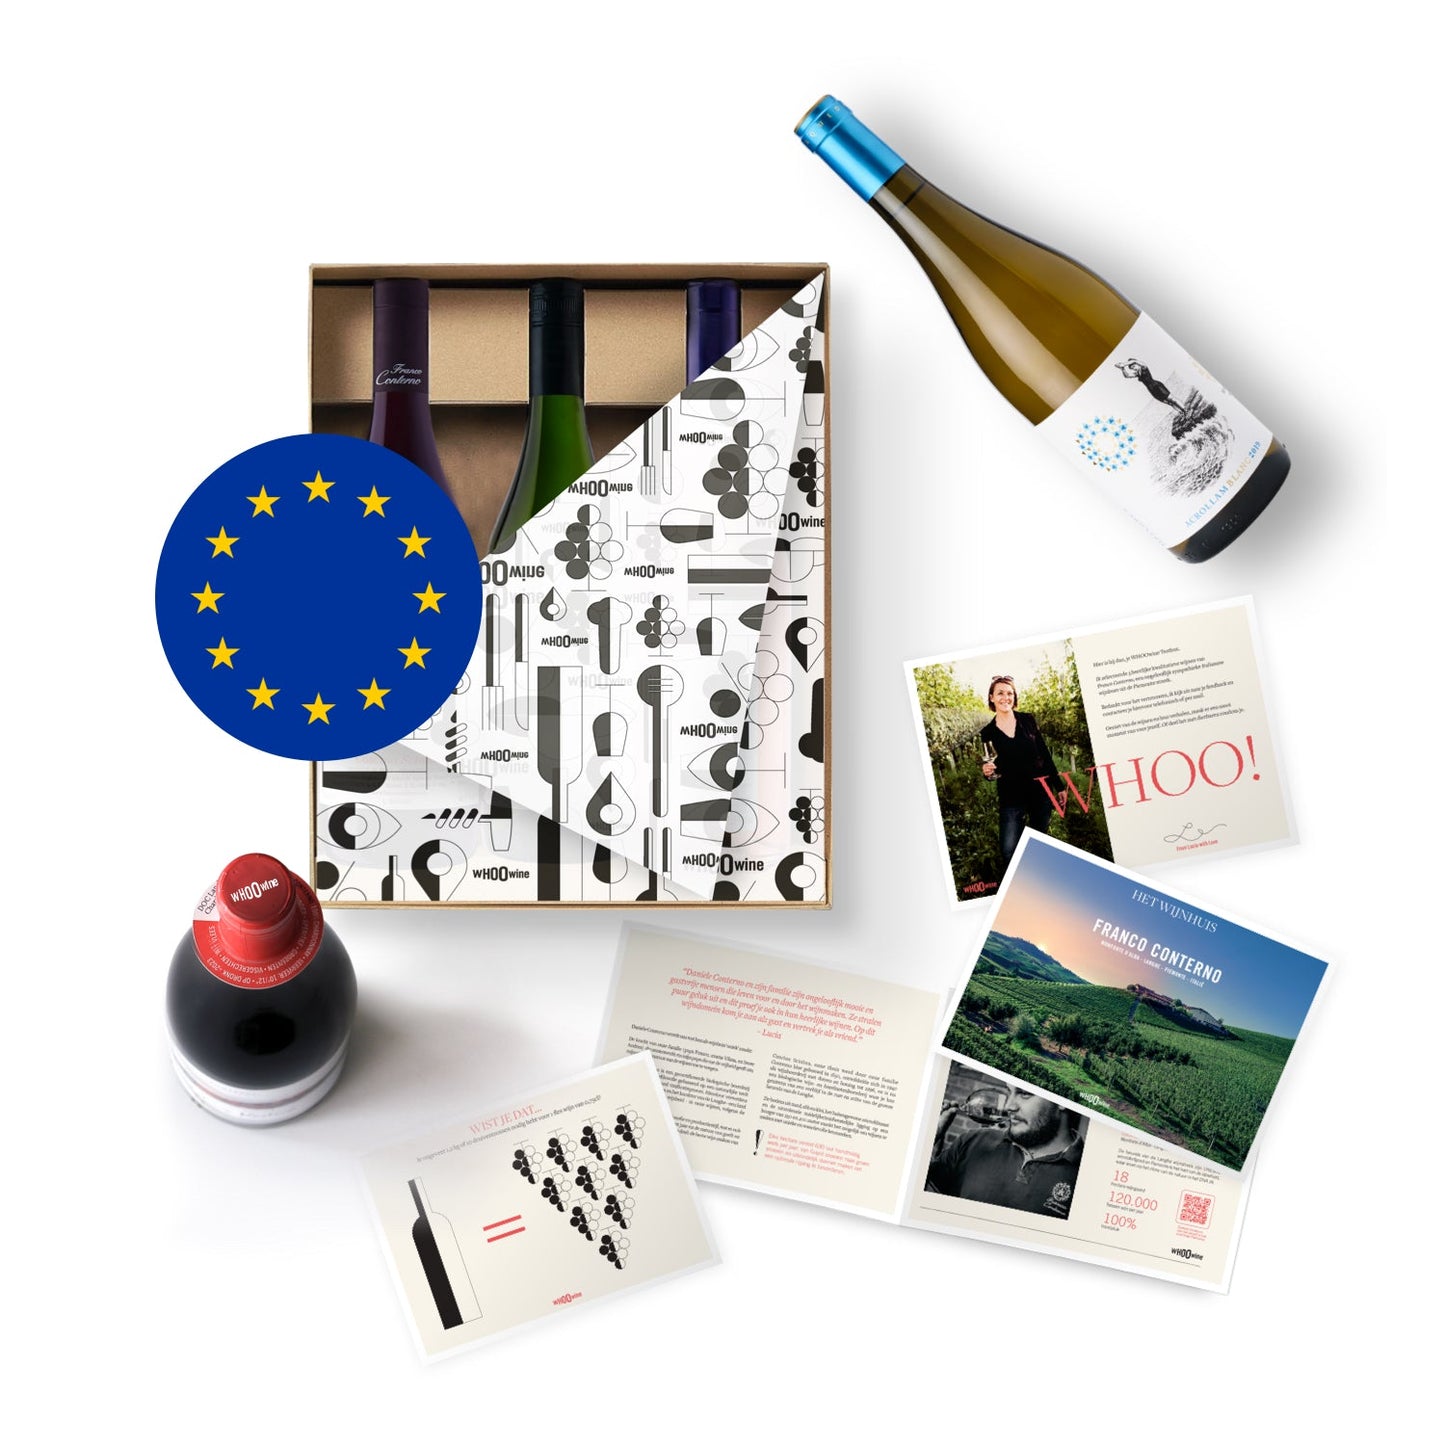 Ontdek unieke Europese wijndomeinen - Betaal per wijnpakket